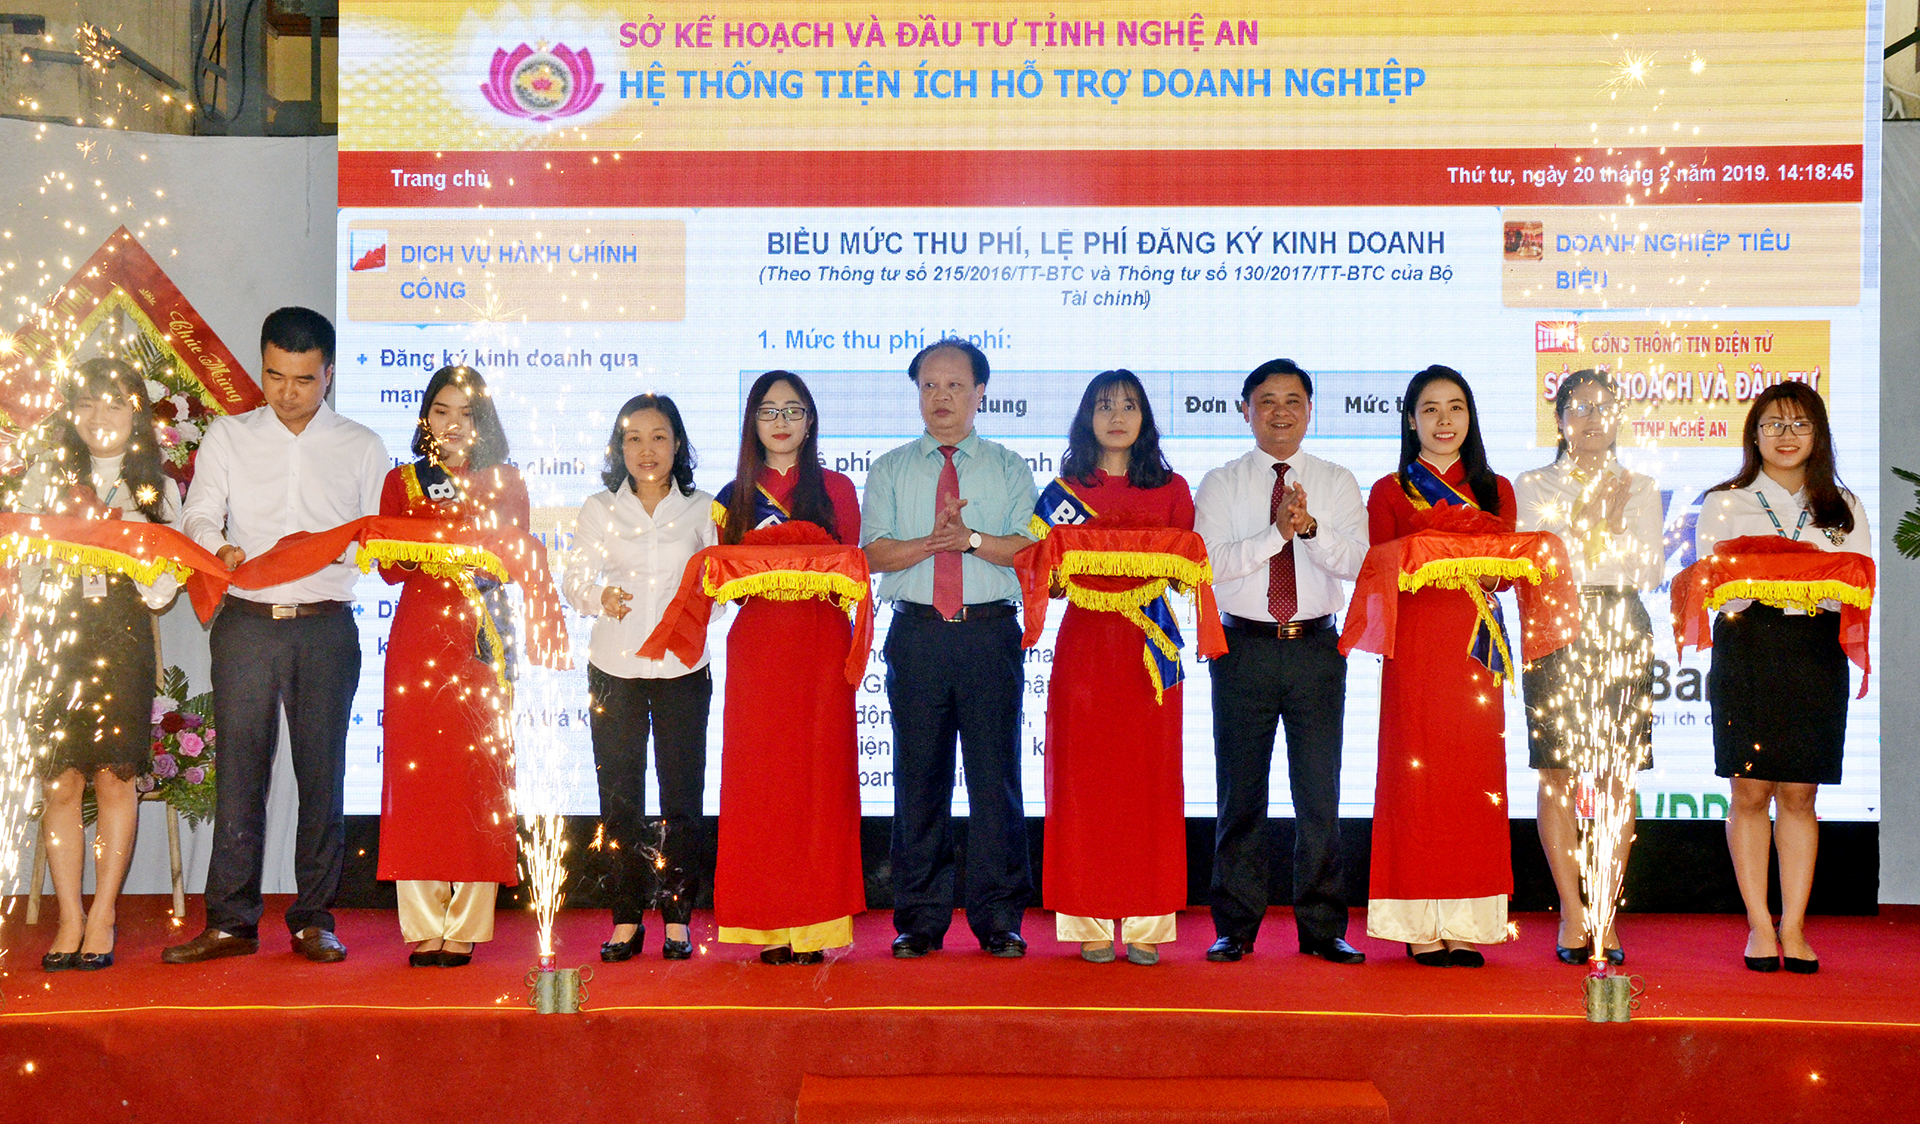 Chủ tịch UBND tỉnh Thái Thanh Quý cùng các đại biểu cắt băng khai trương Cổng thông tin điện tử Hỗ trợ doanh nghiệp.